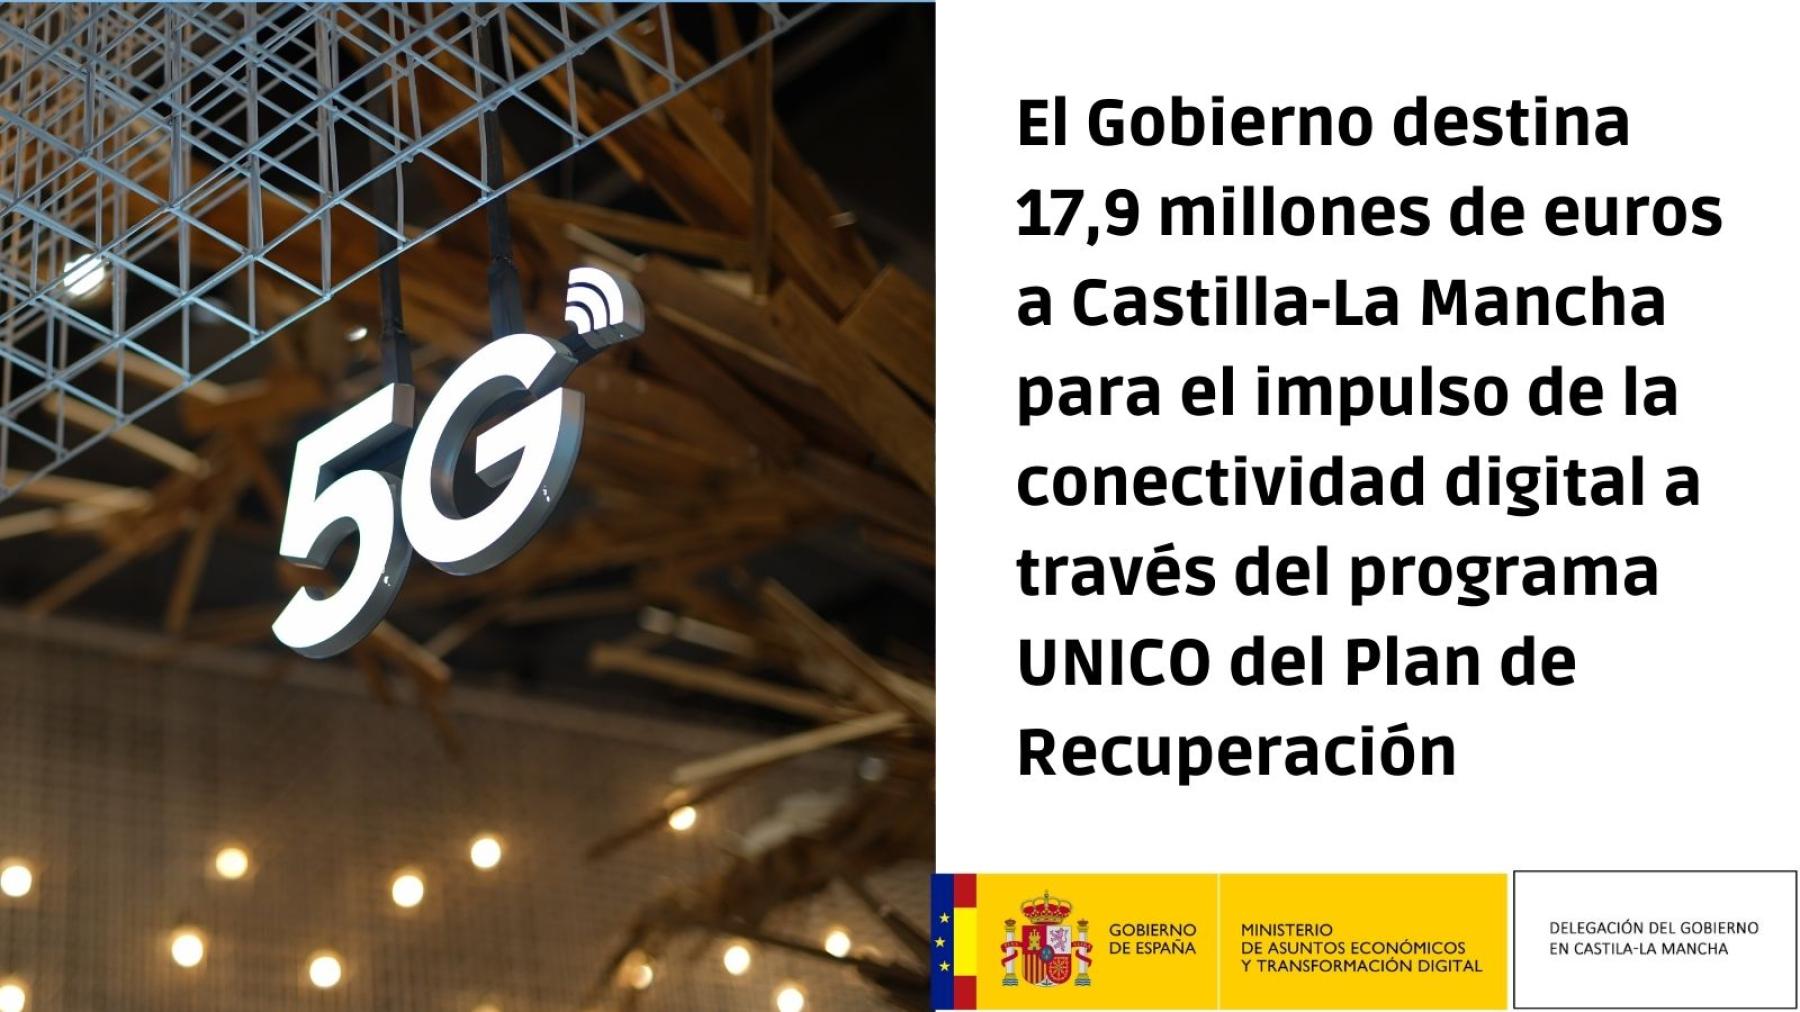 El Gobierno destina 17,9 millones de euros a 
Castilla-La Mancha para el impulso de la 
conectividad digital a través del programa UNICO 
del Plan de Recuperación